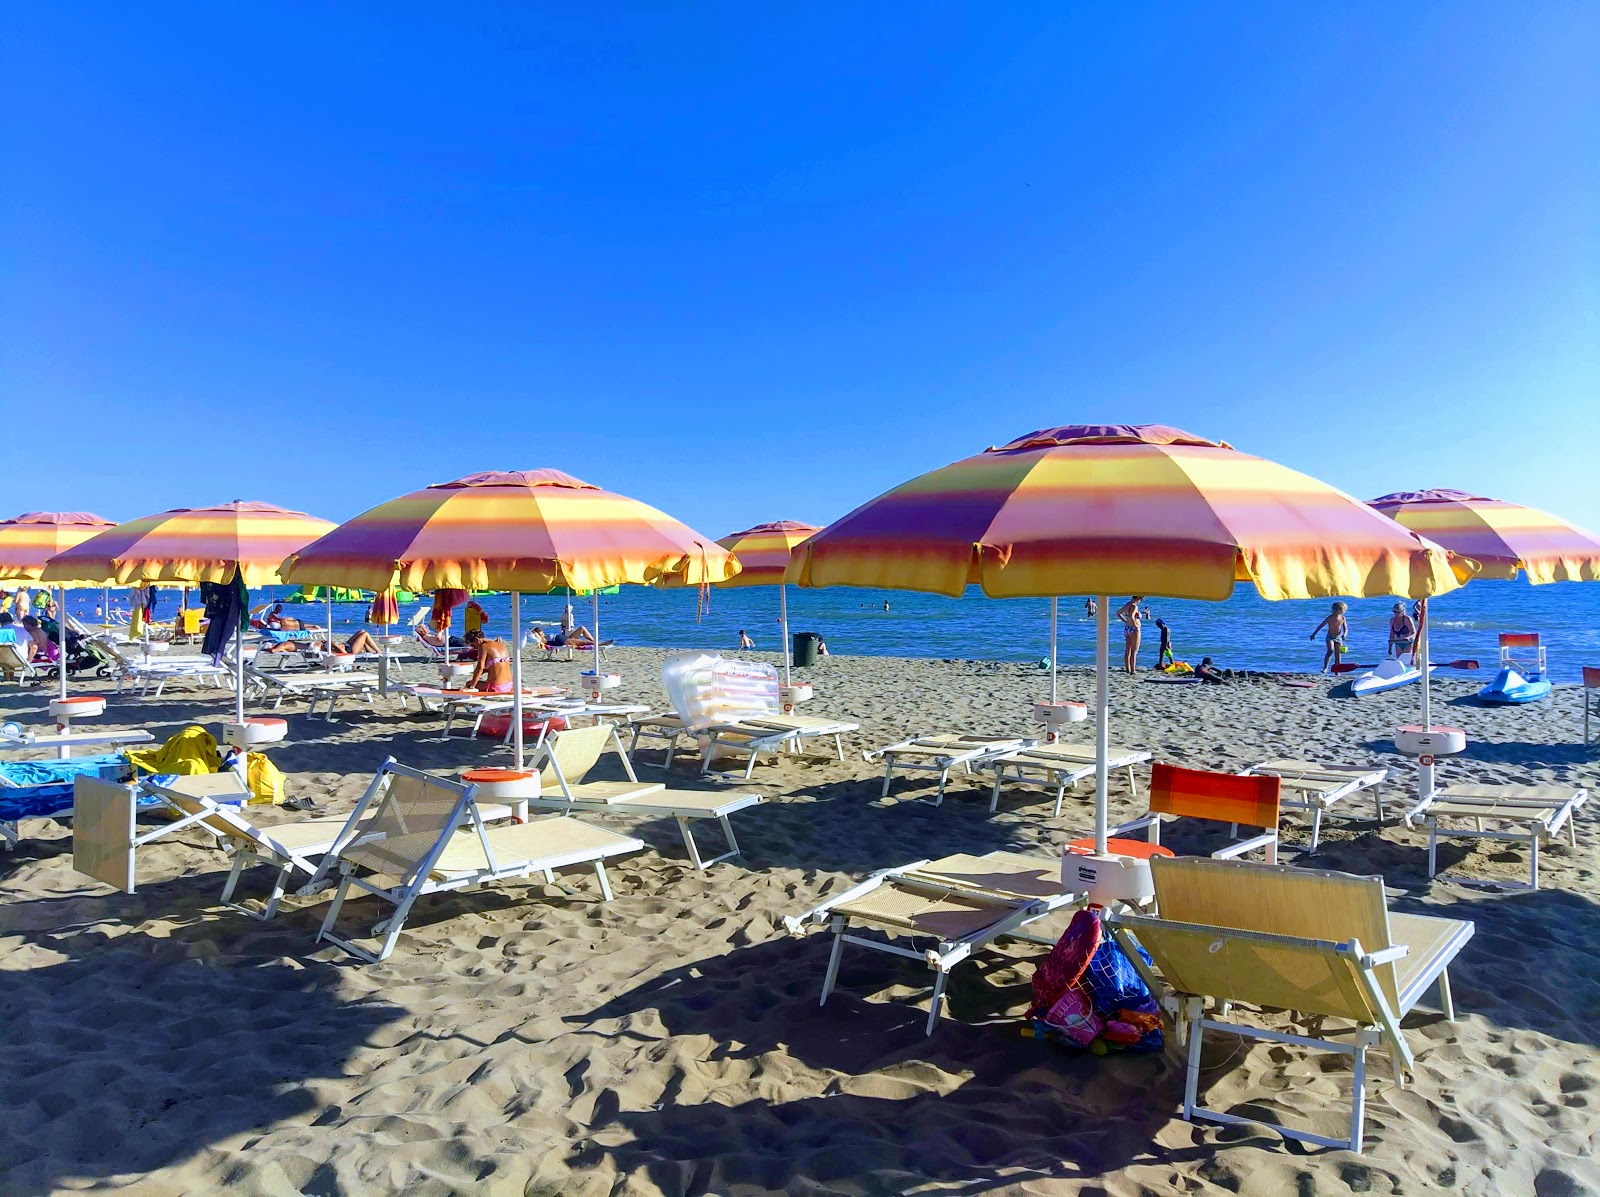 Foto von Spiaggia Marina di Grosseto - empfohlen für Familienreisende mit Kindern